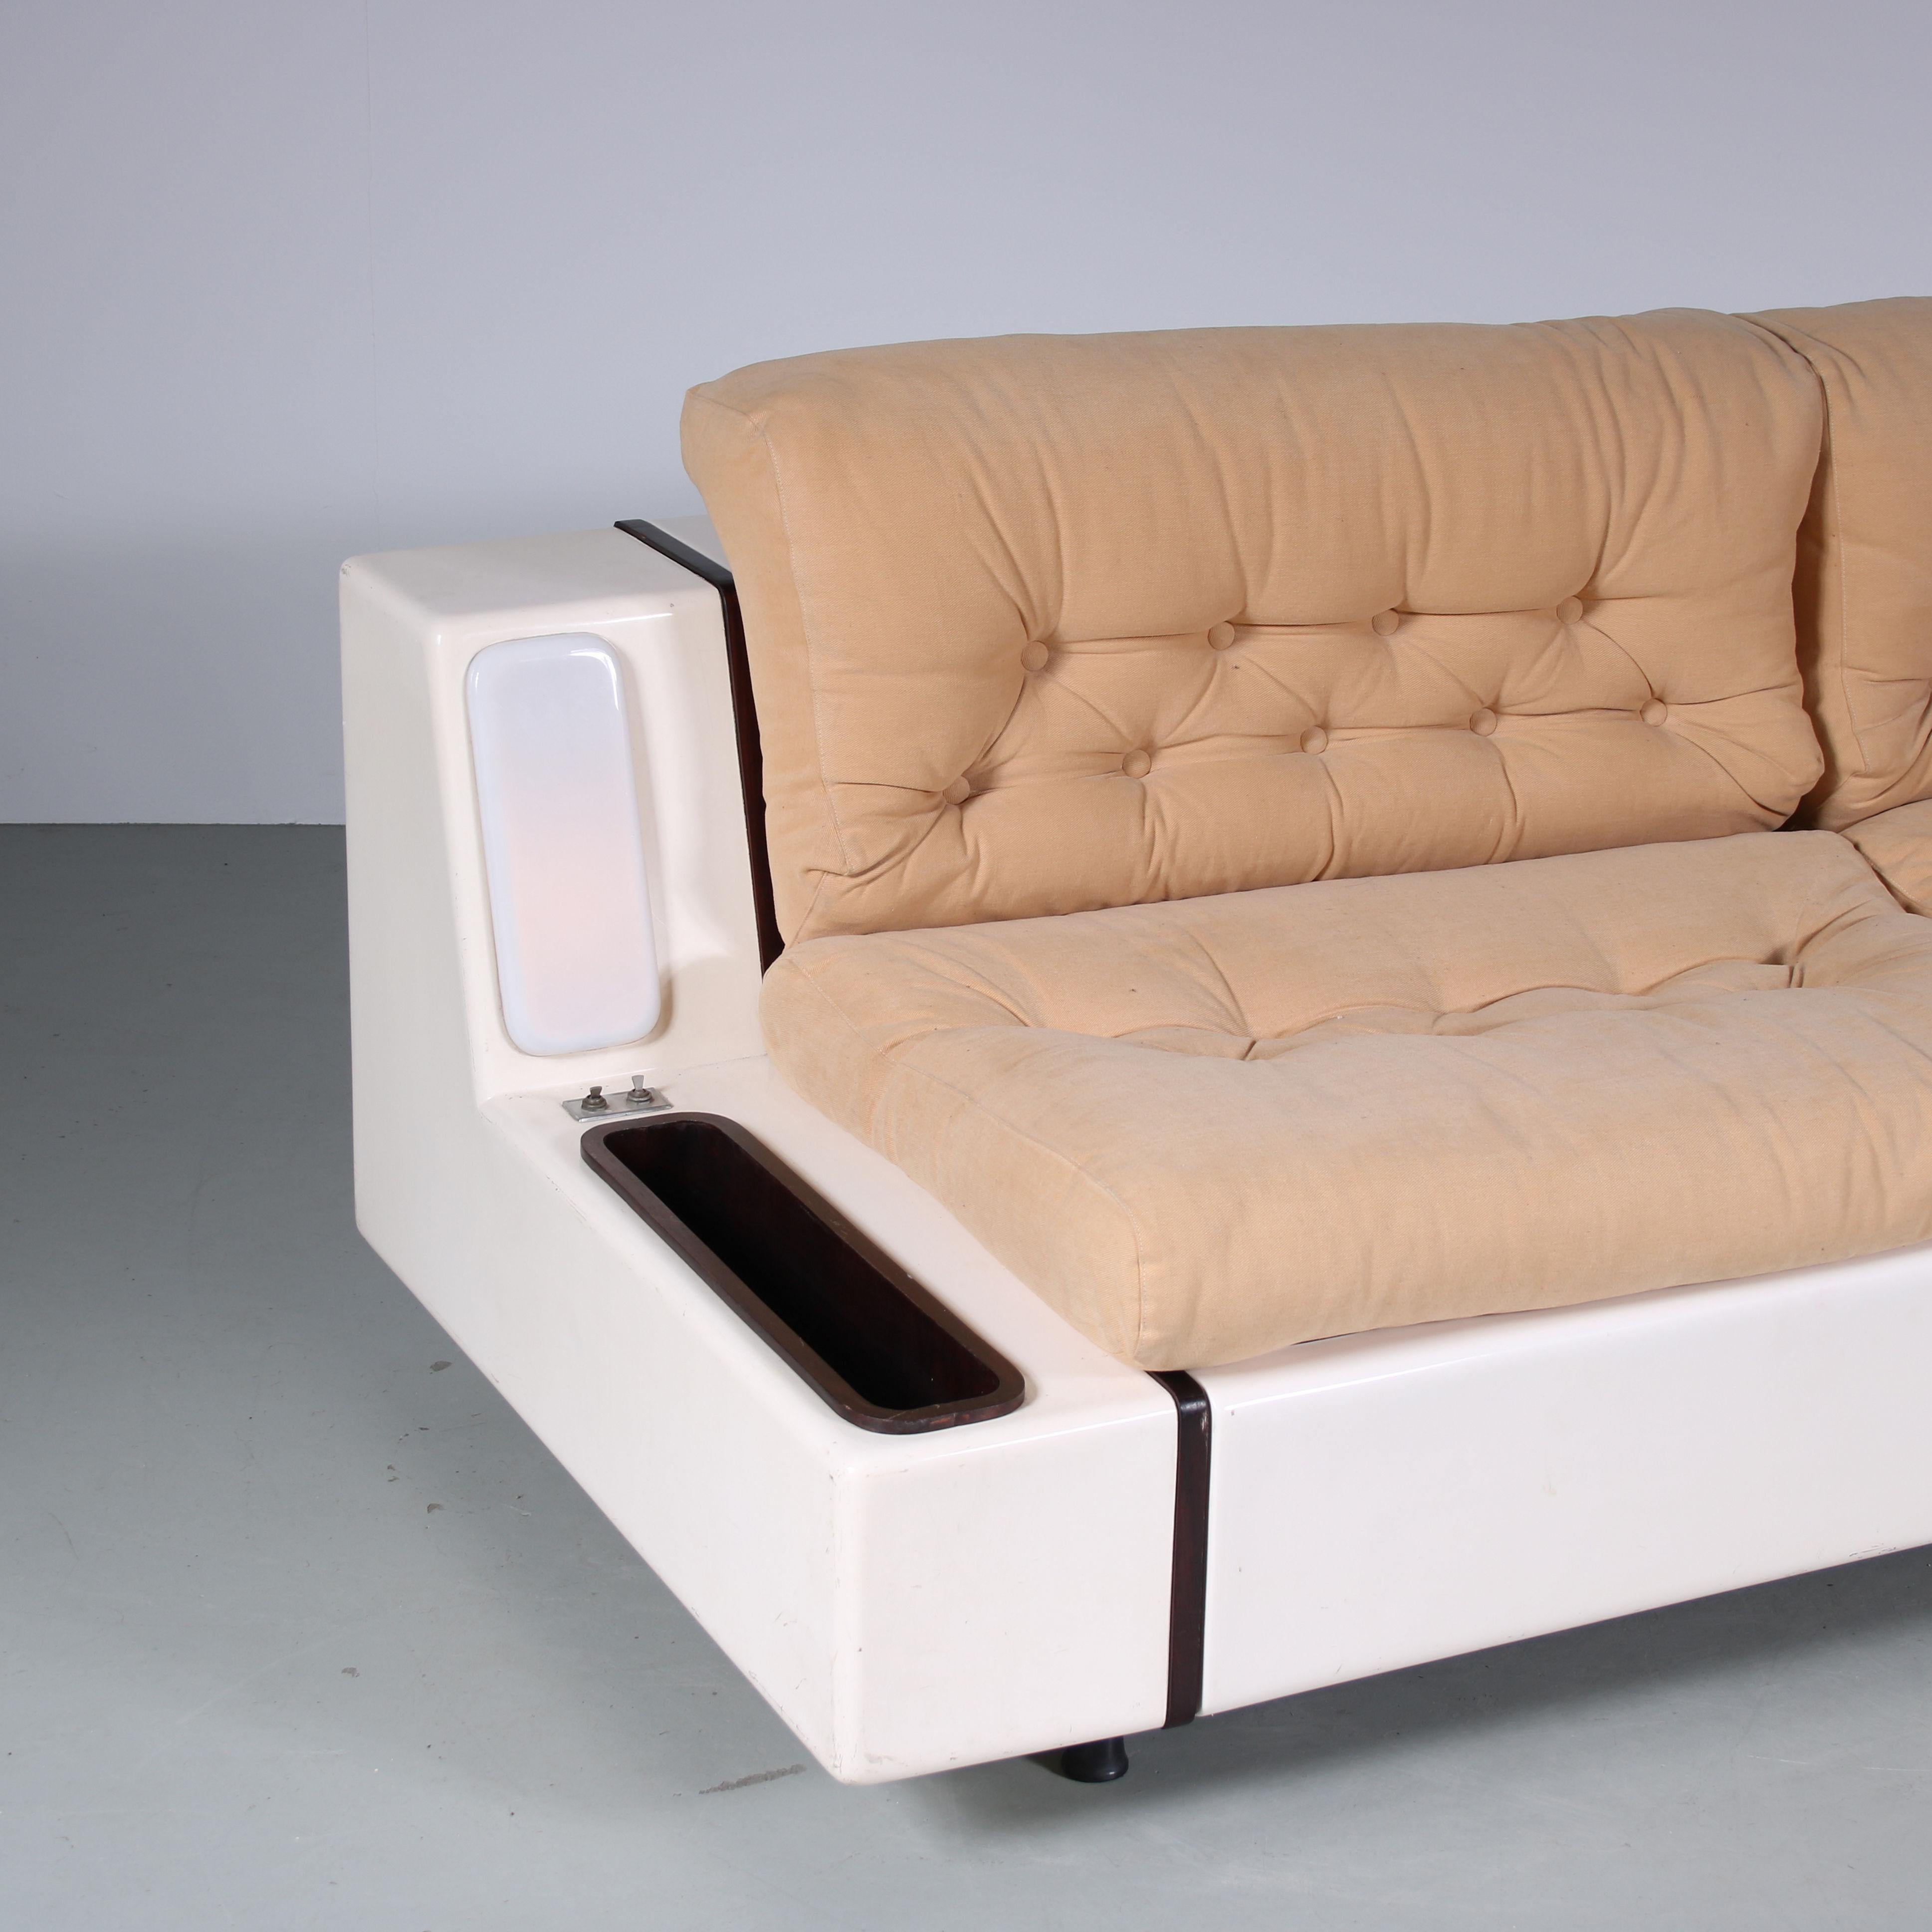 Mid-20th Century “Tortuga” Sleeping Sofa by Beka, Italy, 1960